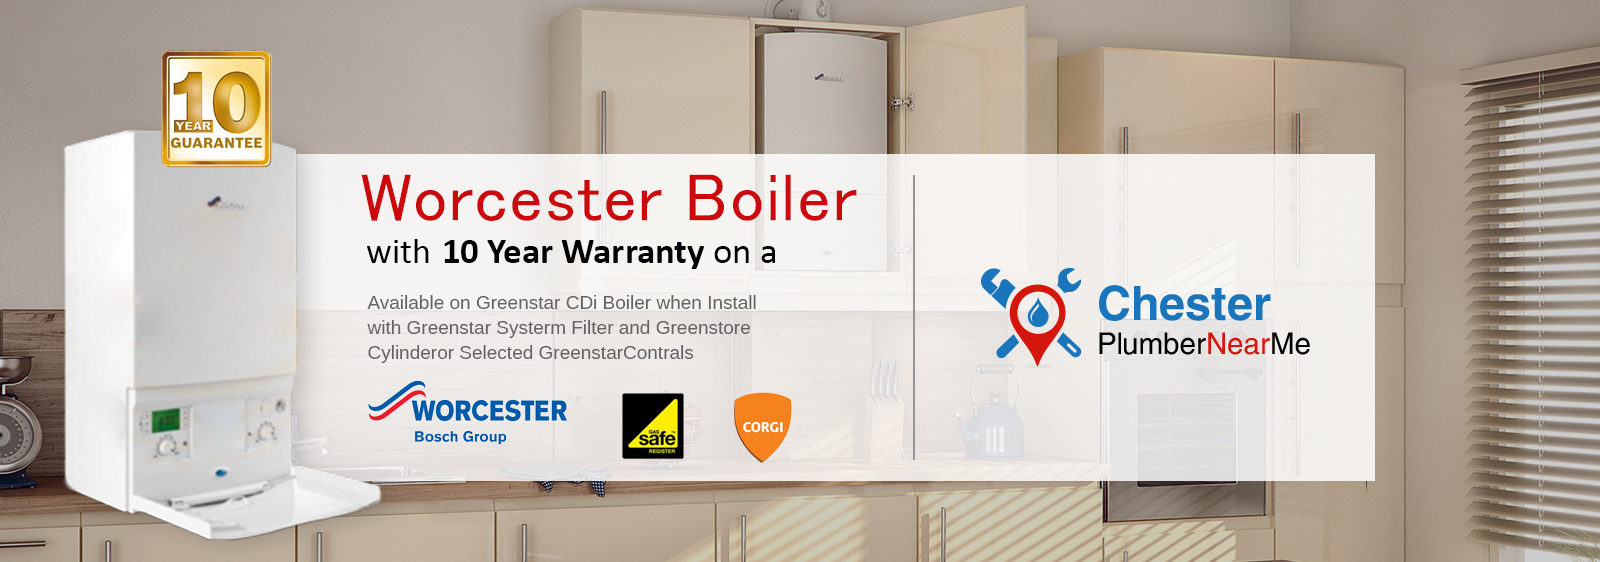 Boiler Installation Chester